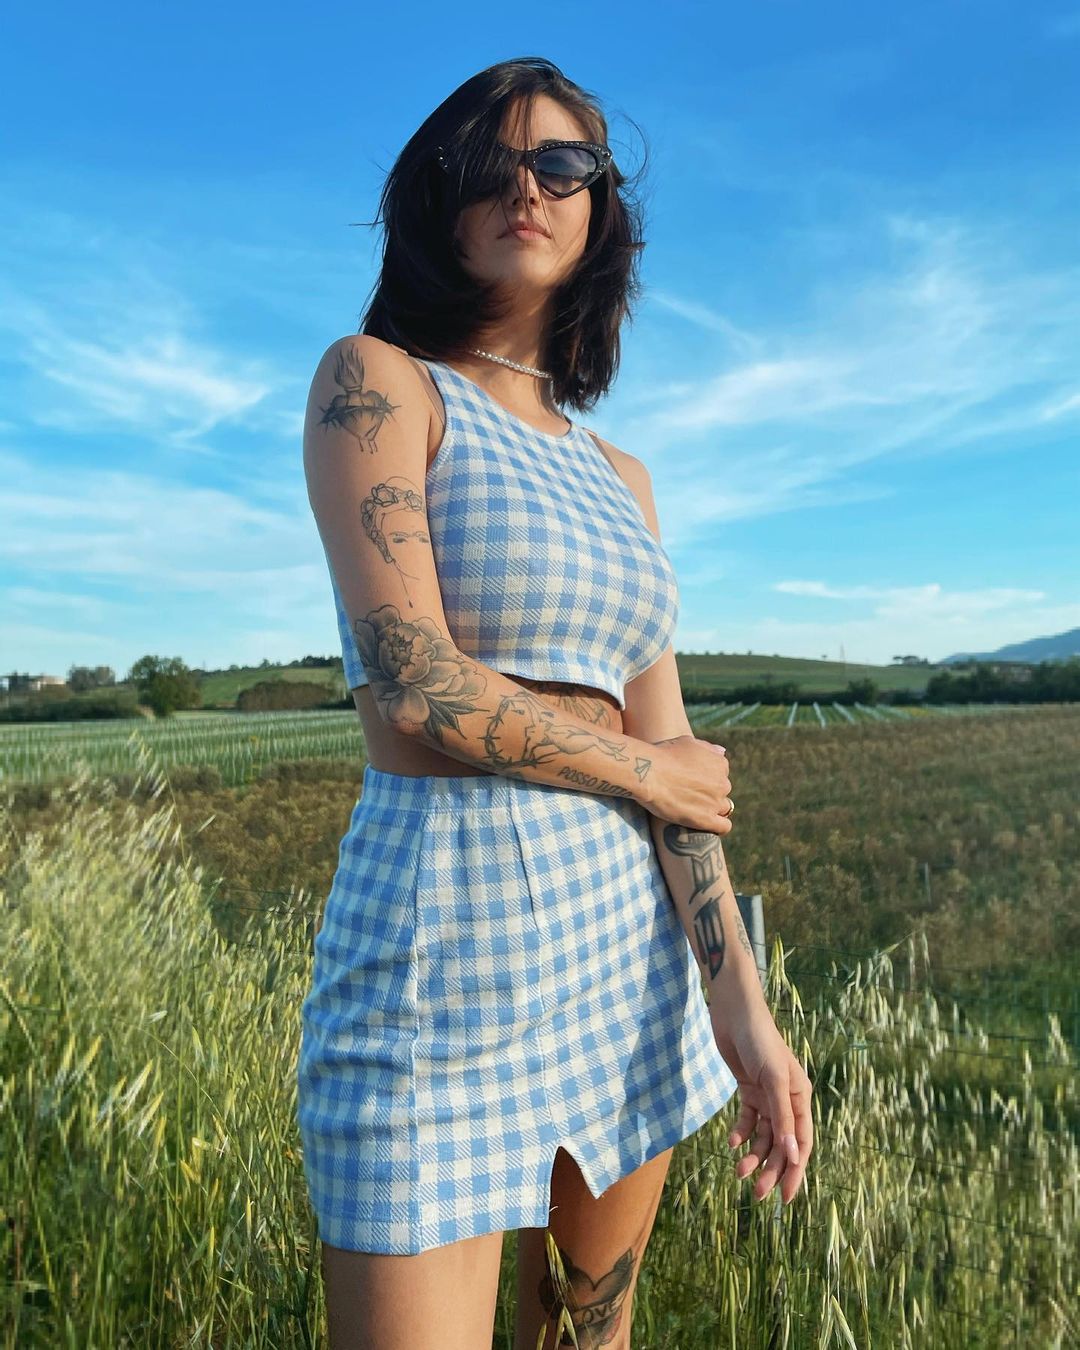 Солист Måneskin подтвердил роман с итальянской моделью – рассматриваем её Instagram